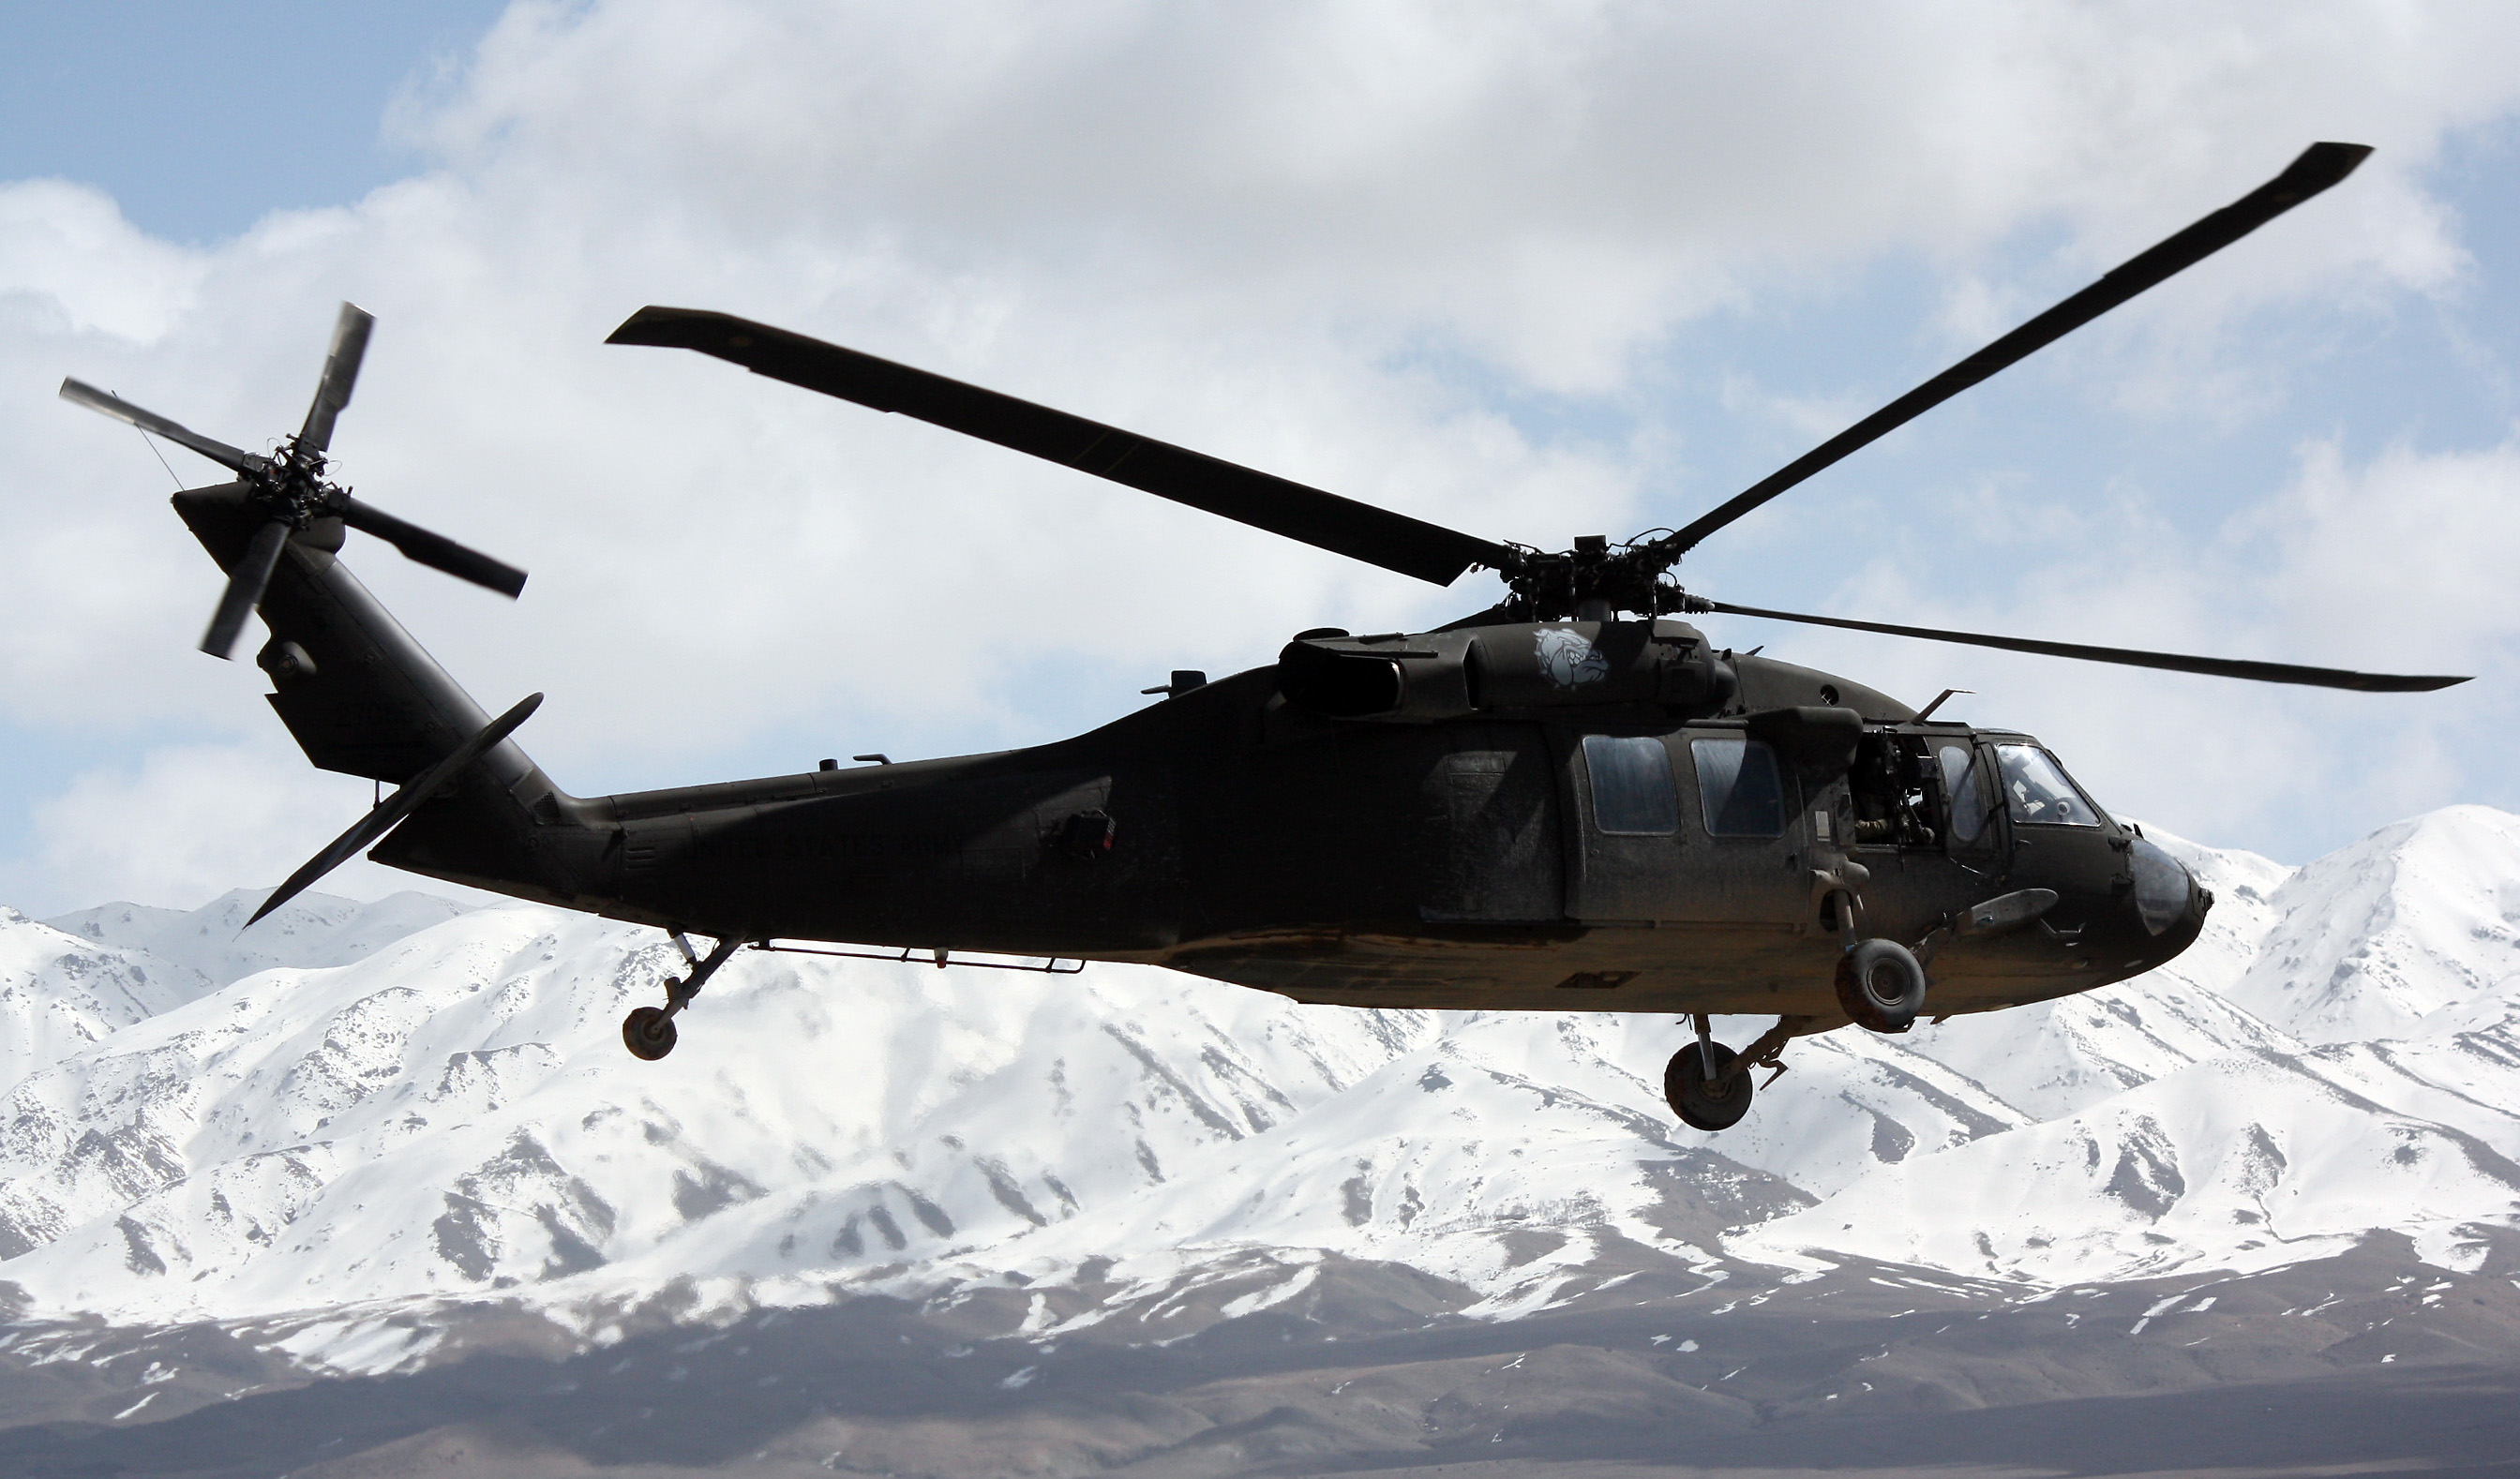 W ramach programu śmigłowce UH-60M Black Hawk zastępują sowieckie Mi-8 m. in. na Litwie, Słowacji i w Albanii. Fot. US Army.